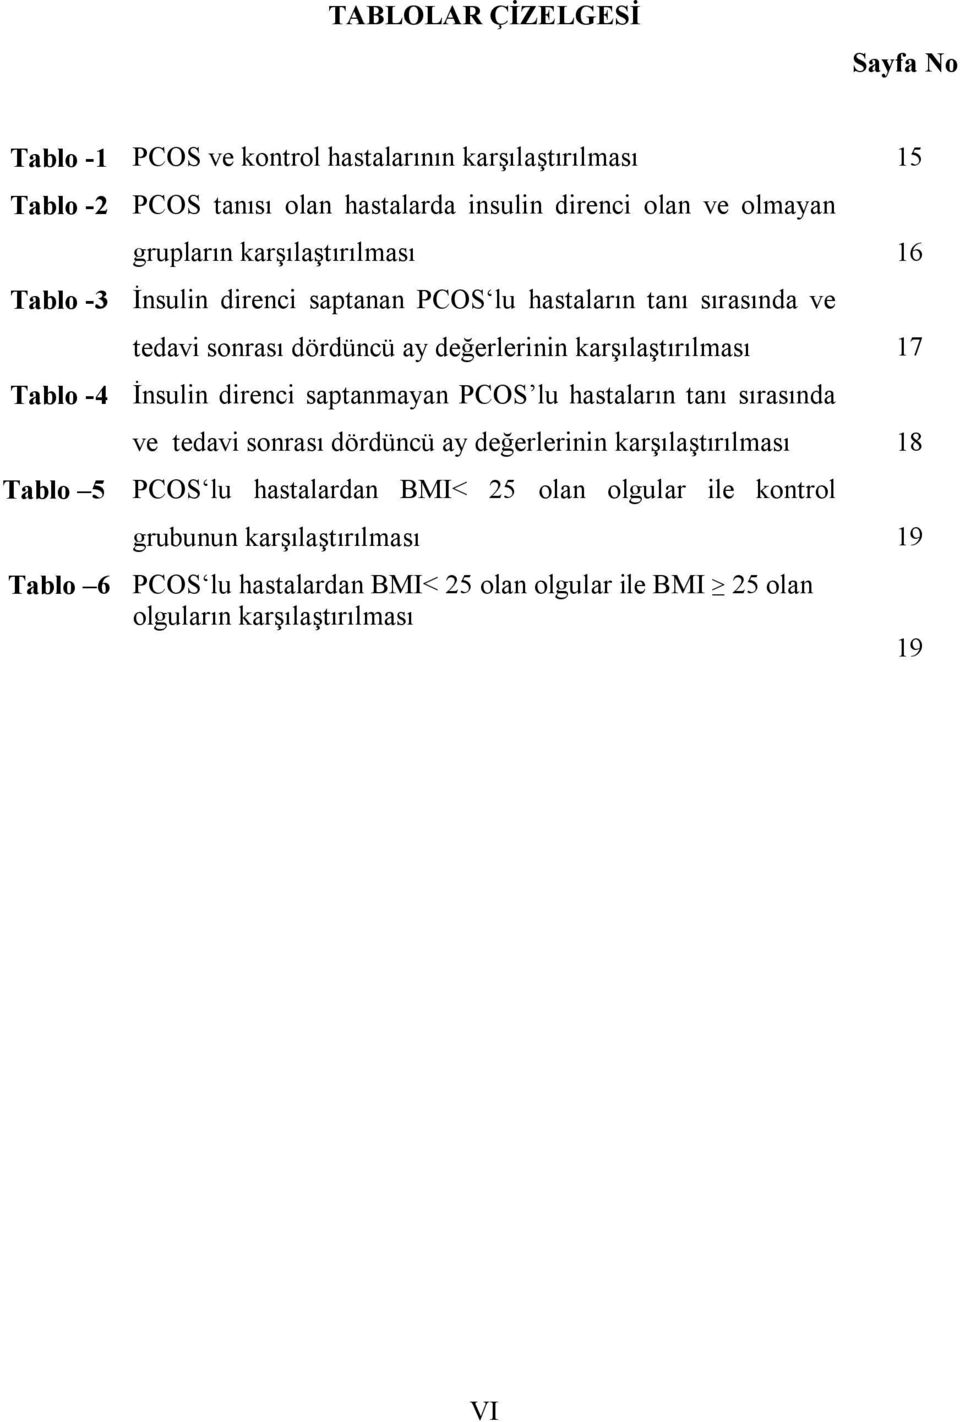 17 Tablo -4 İnsulin direnci saptanmayan PCOS lu hastaların tanı sırasında Tablo 5 ve tedavi sonrası dördüncü ay değerlerinin karşılaştırılması 18 PCOS lu